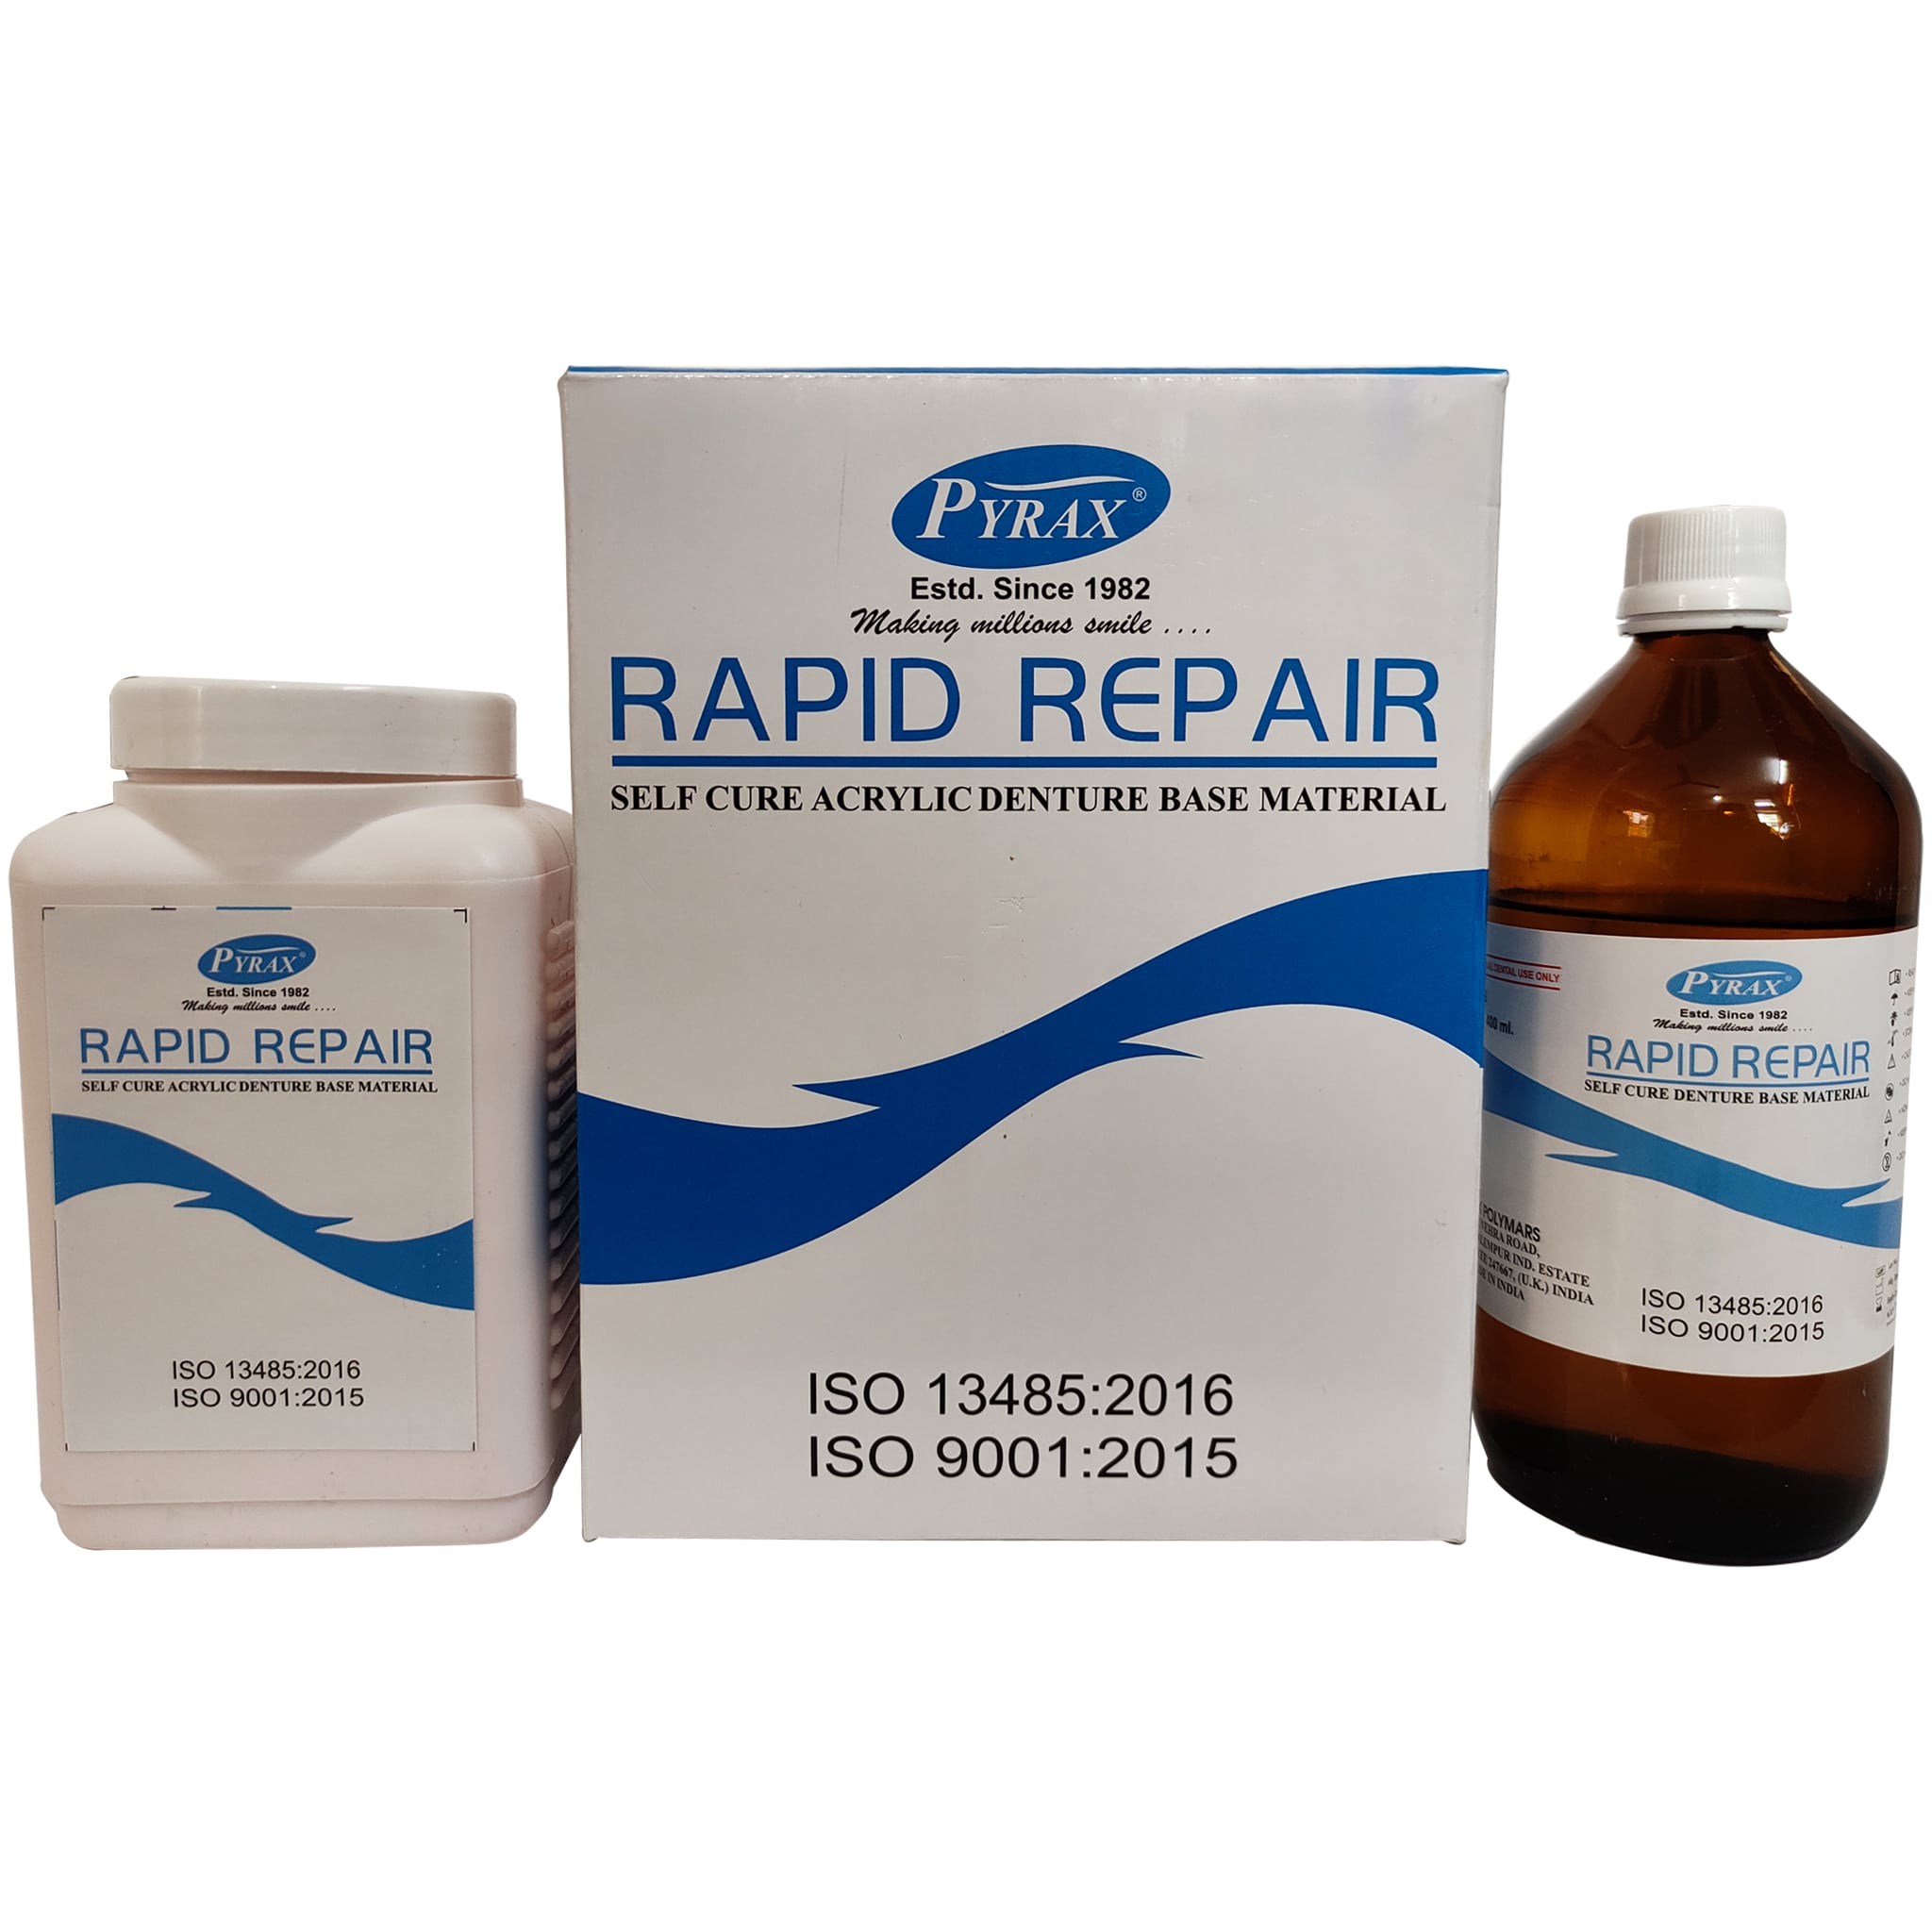 Pyrax Rapid Repair Laboratory Pack